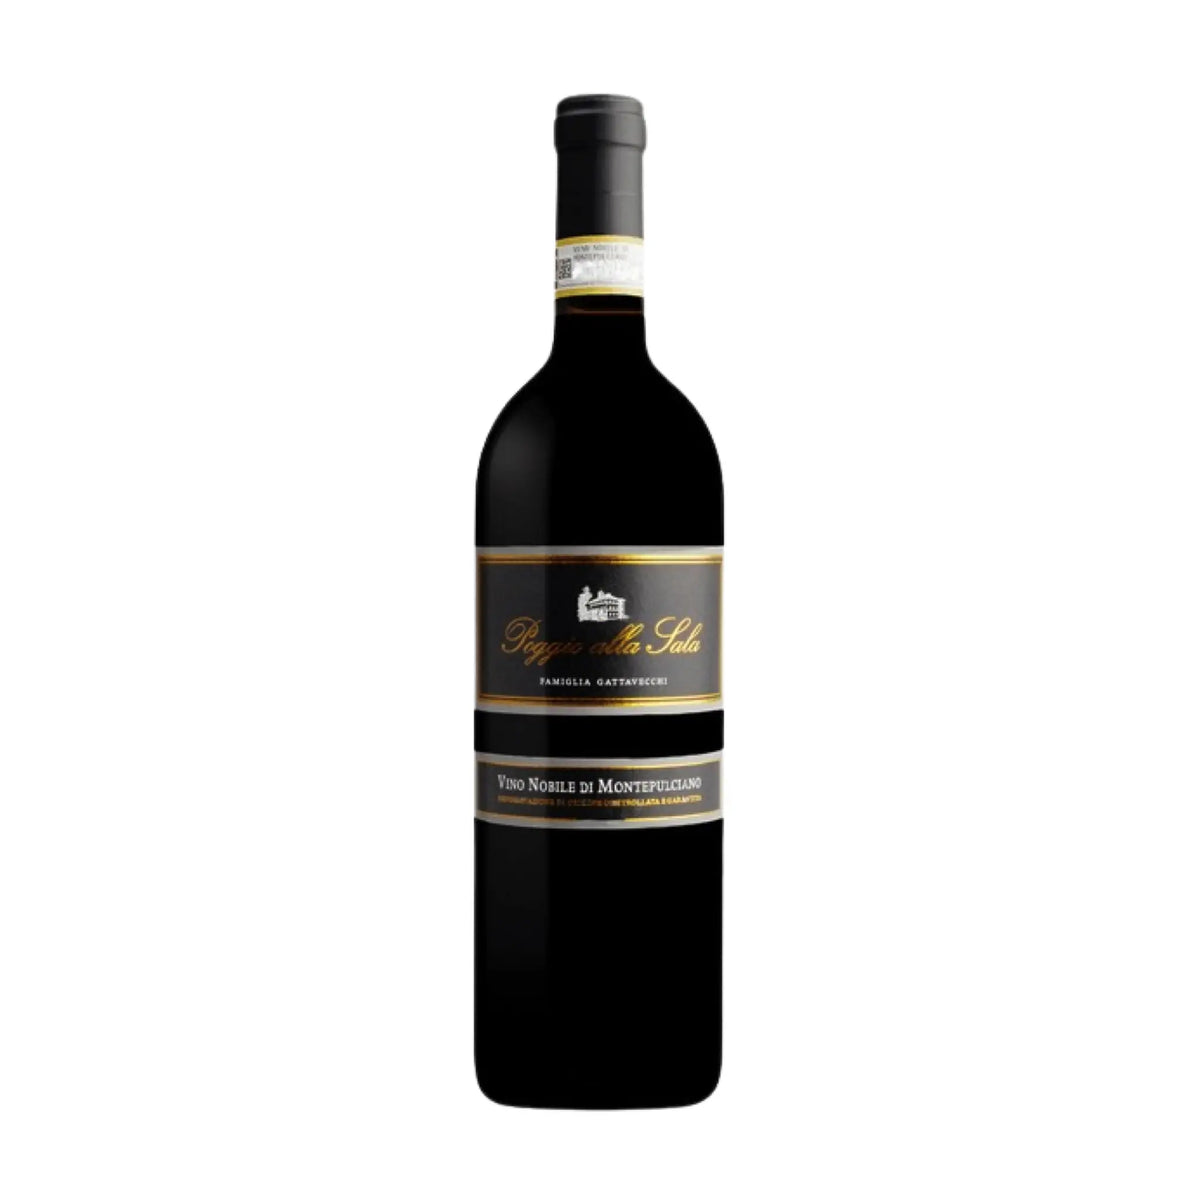 Poggio alla Sala-Rotwein-Prugnolo Gentile (Sangiovese)-2019 Vino Nobile di Montepulciano DOCG-WINECOM